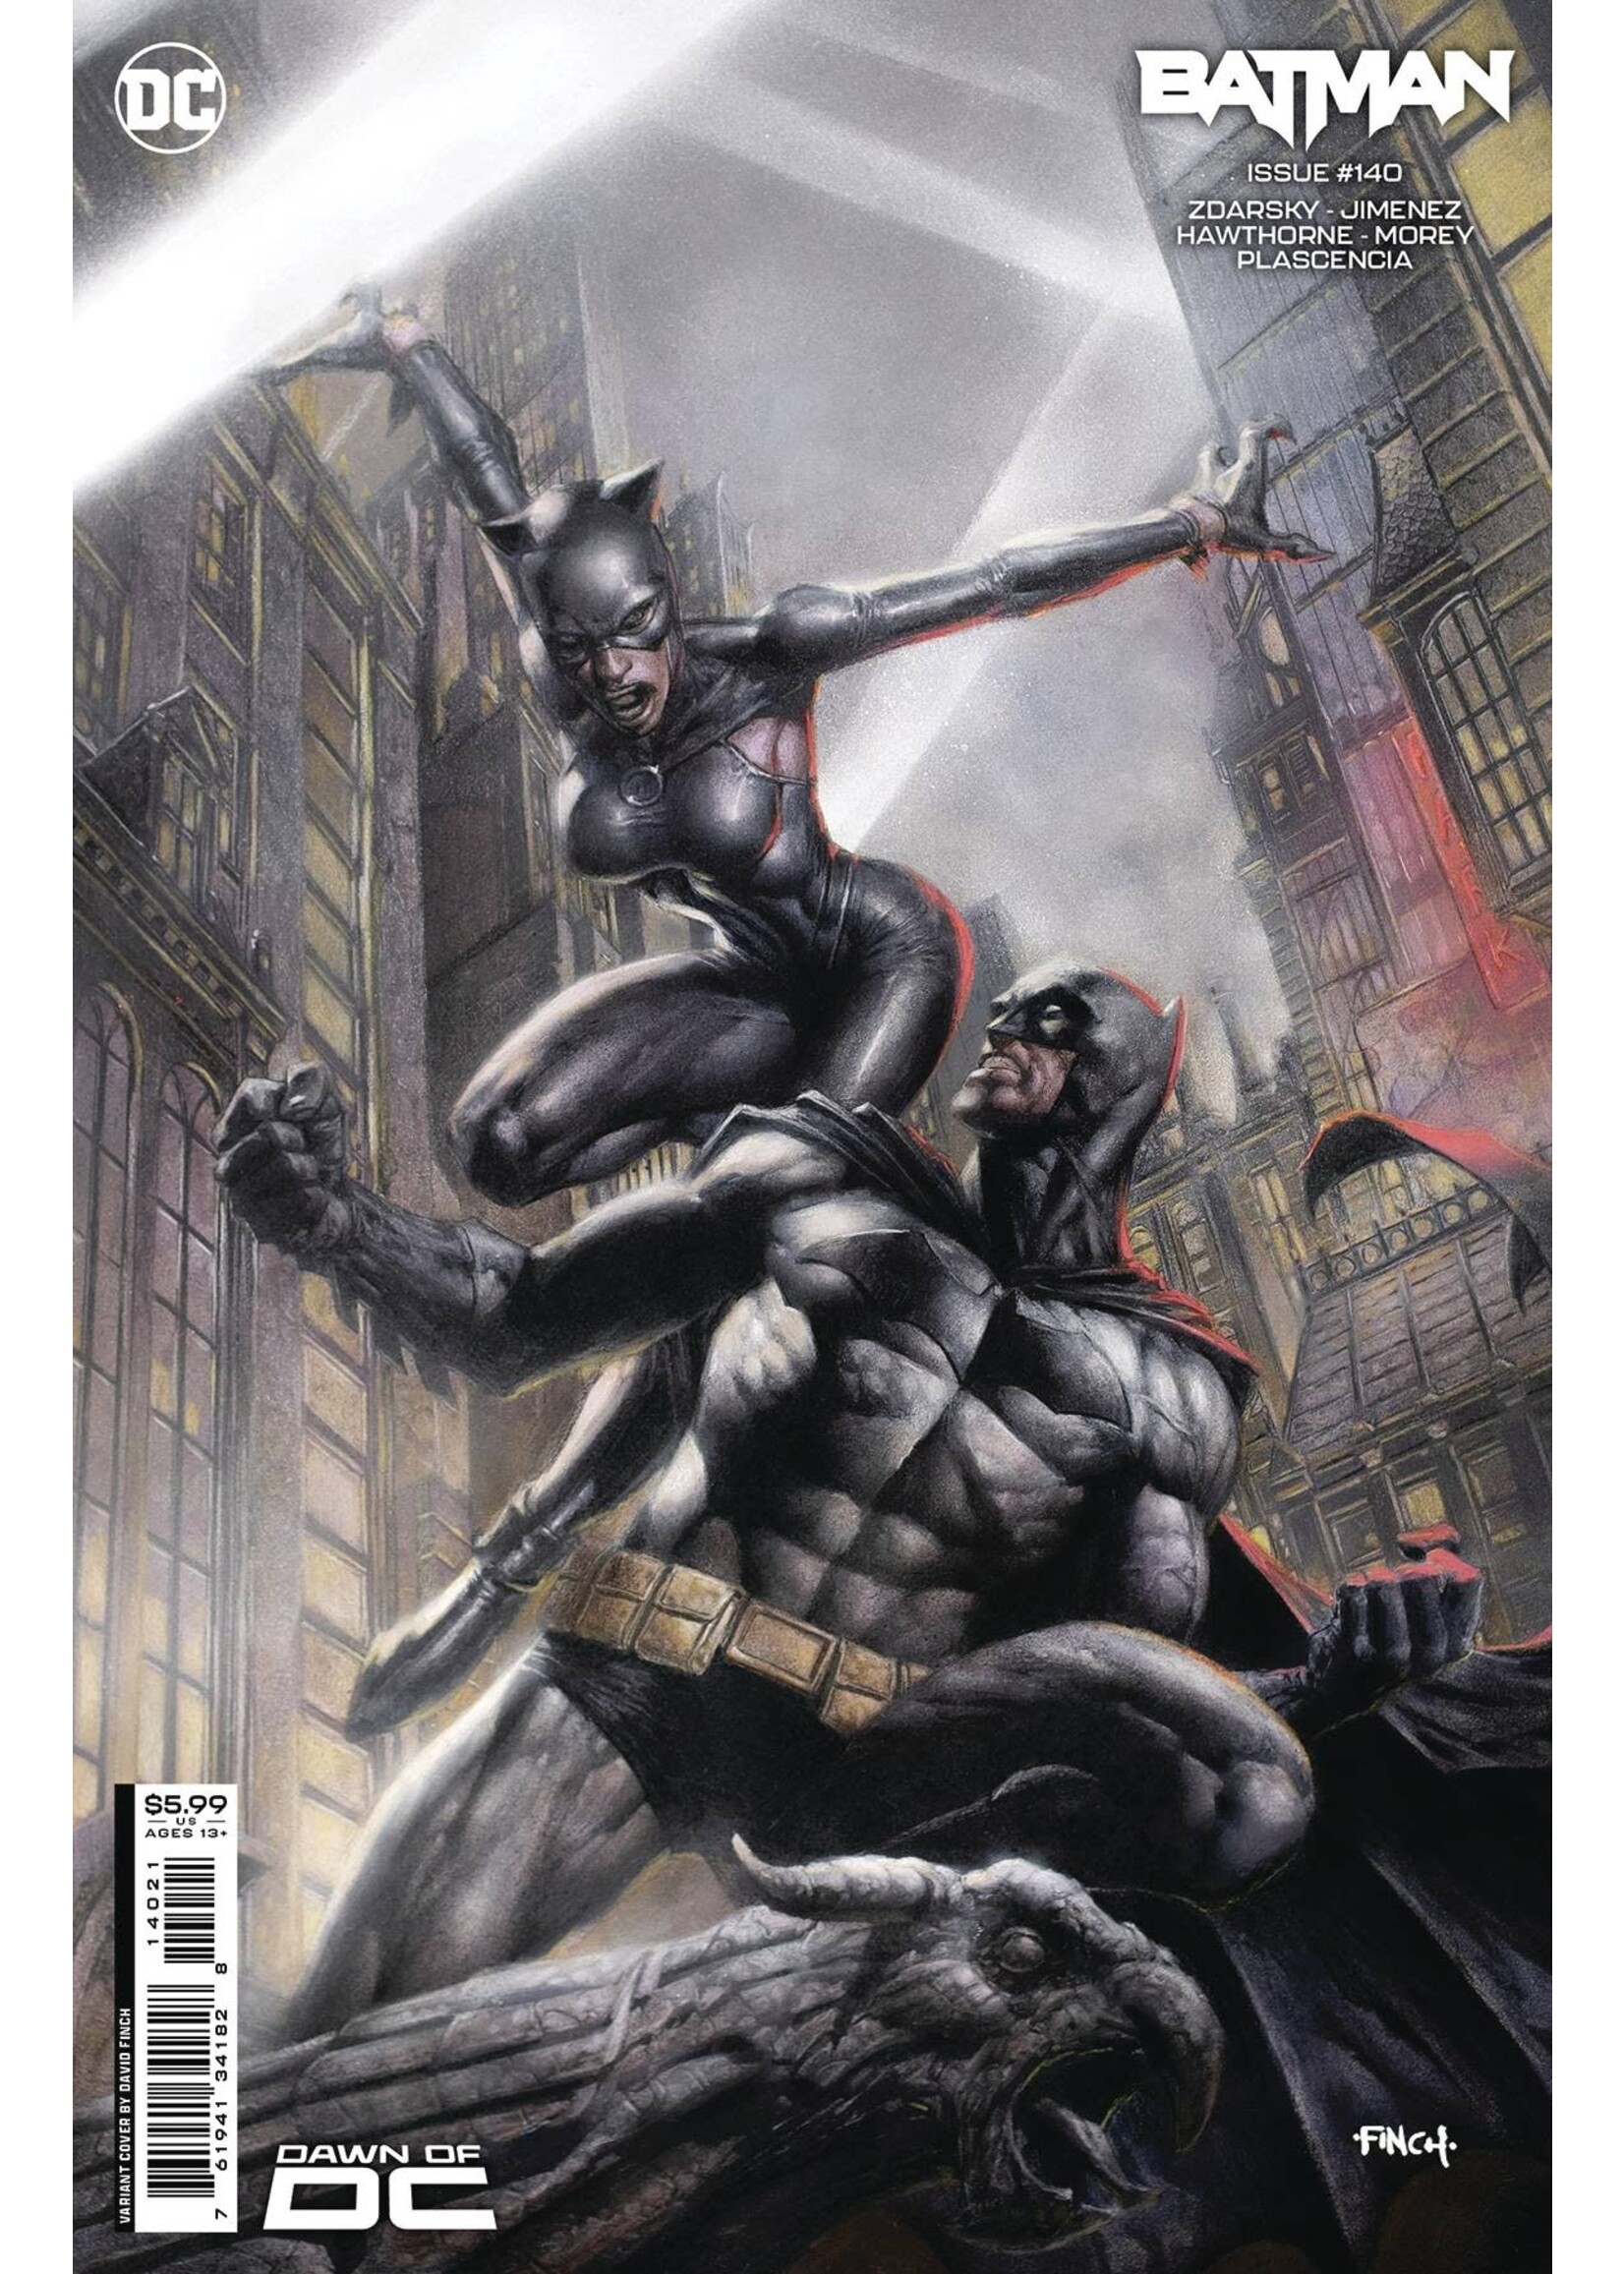 DC COMICS BATMAN #140 FINCH